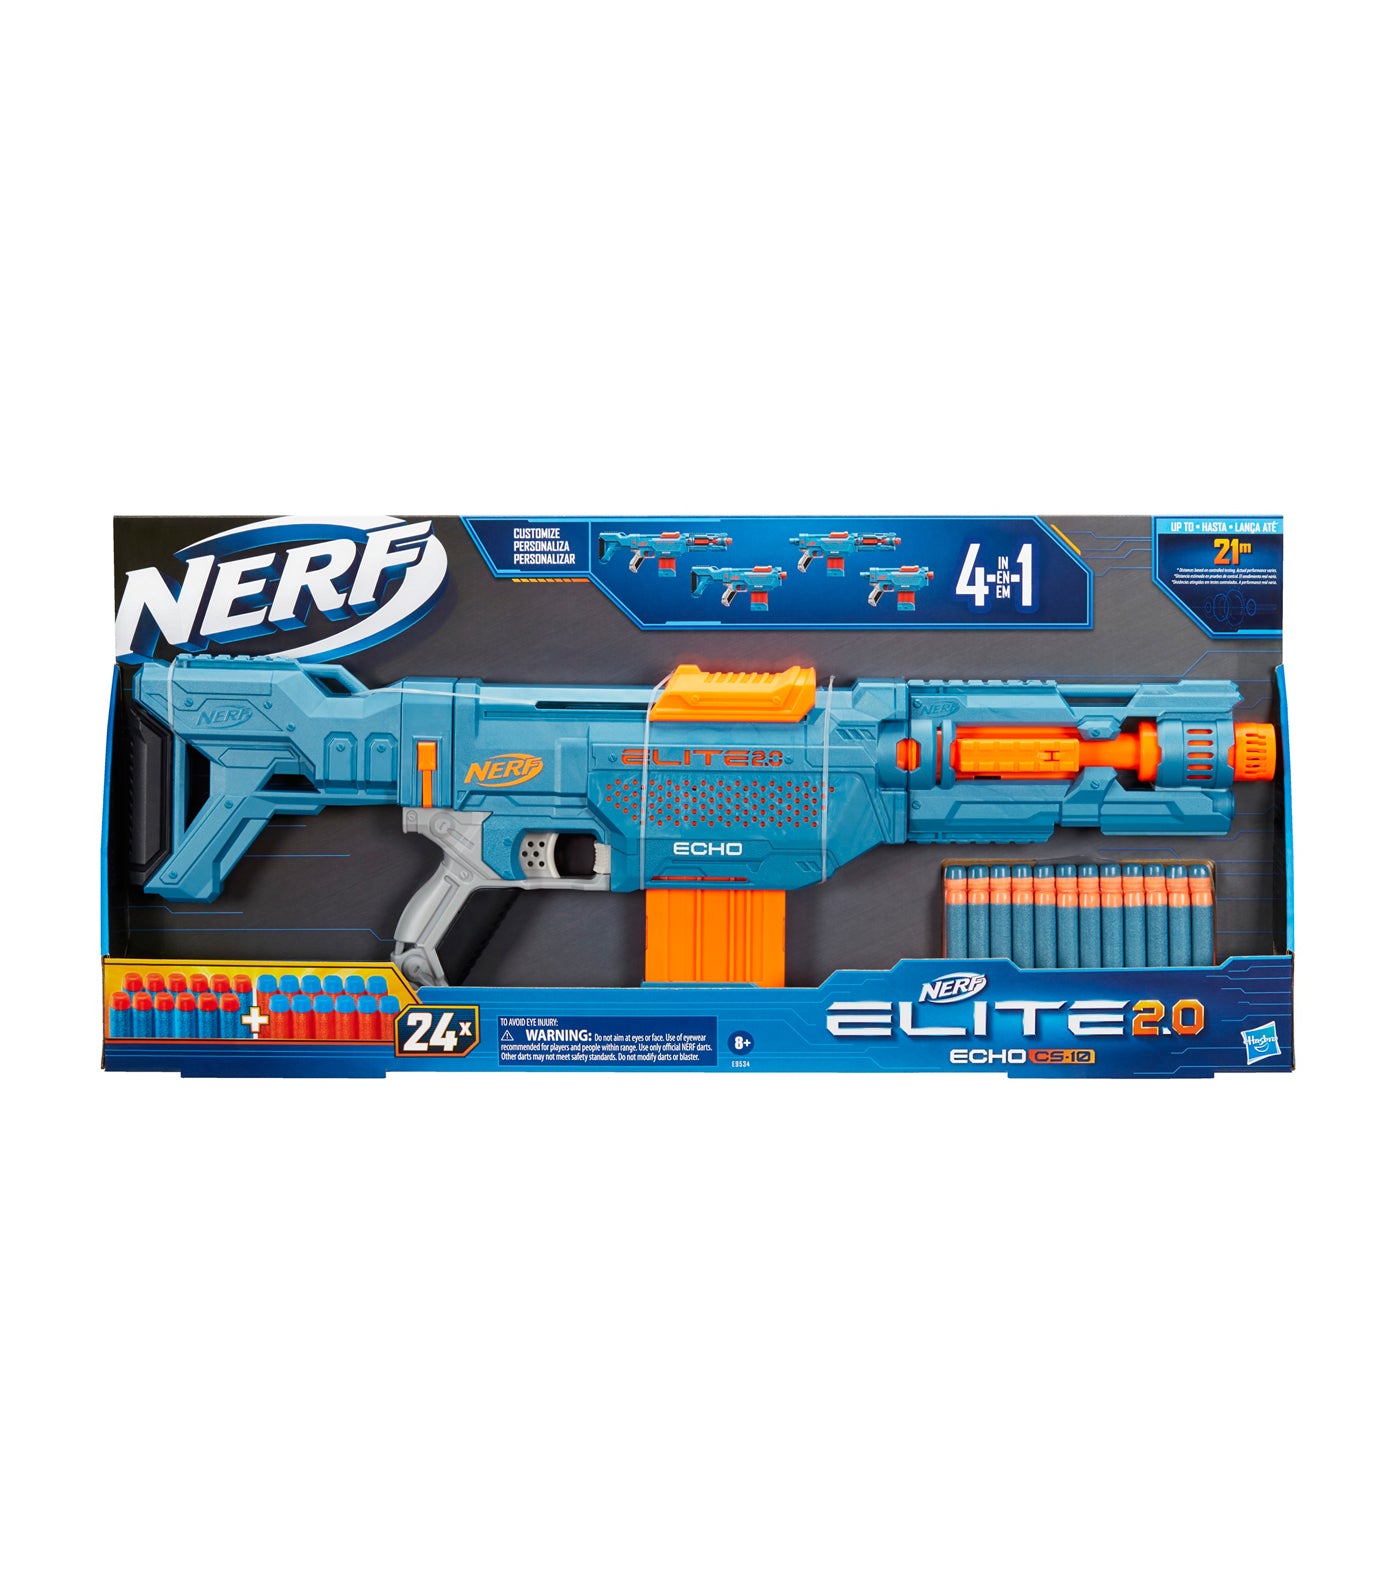 Nerf Fortnite DG Blaster 